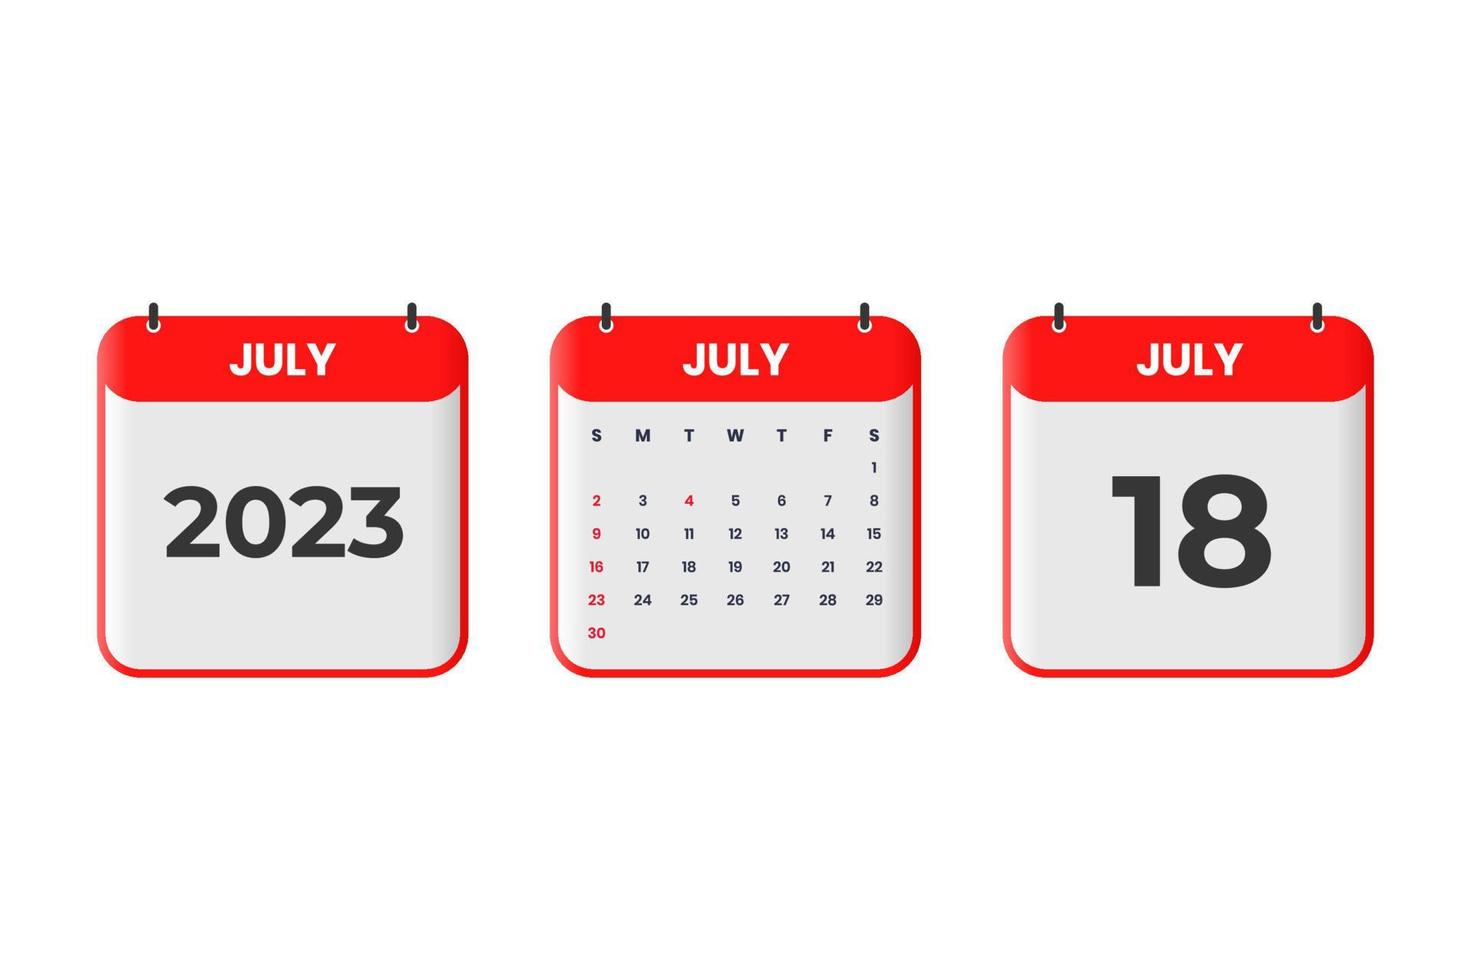 juli 2023 kalender design. 18: e juli 2023 kalender ikon för schema, utnämning, Viktig datum begrepp vektor